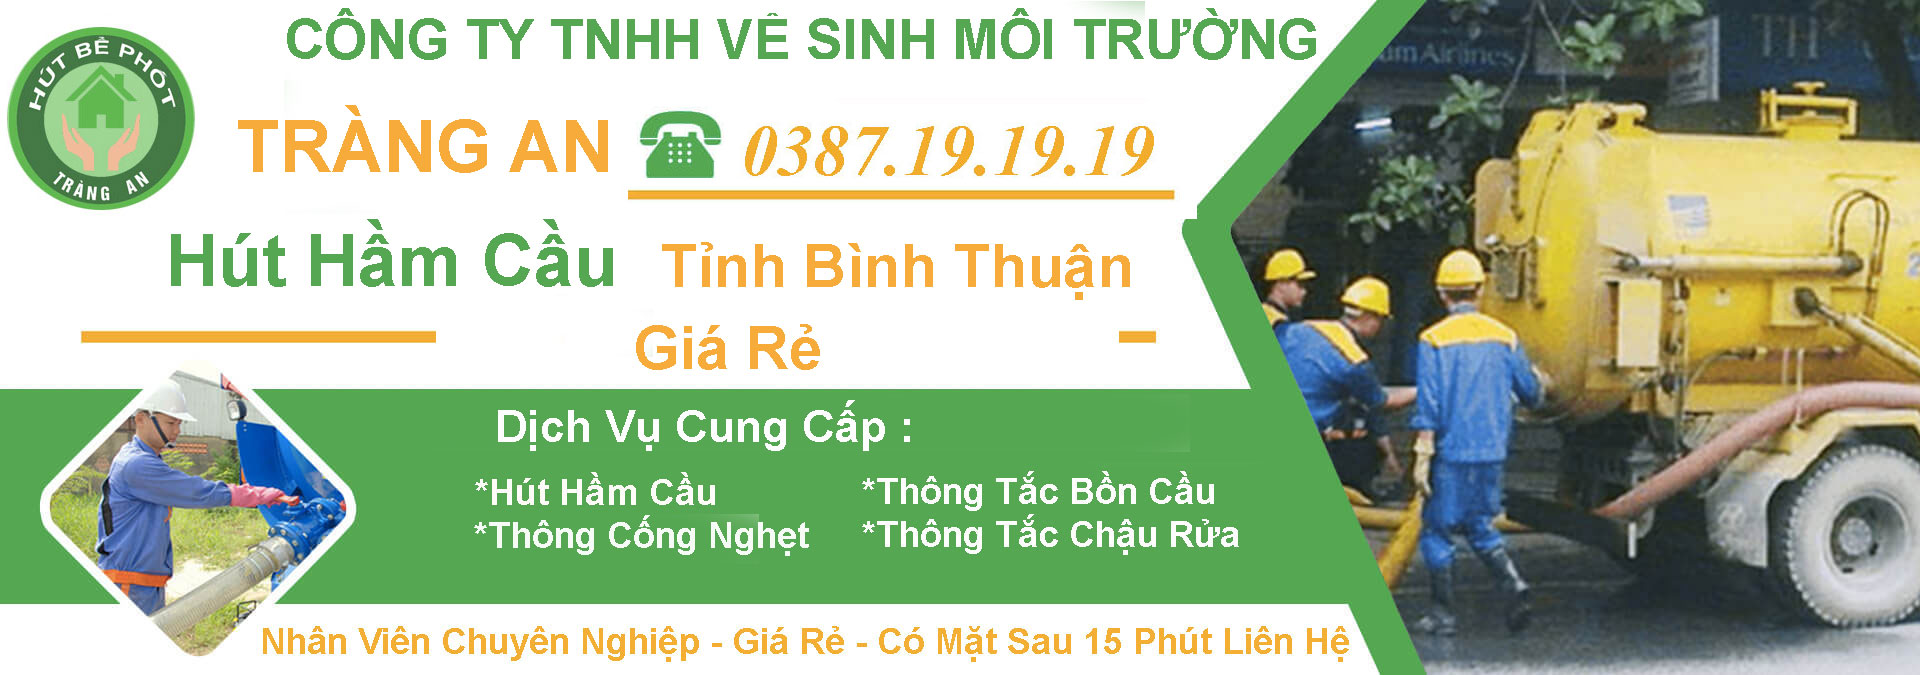 Hut Ham Cau Binh Thuan